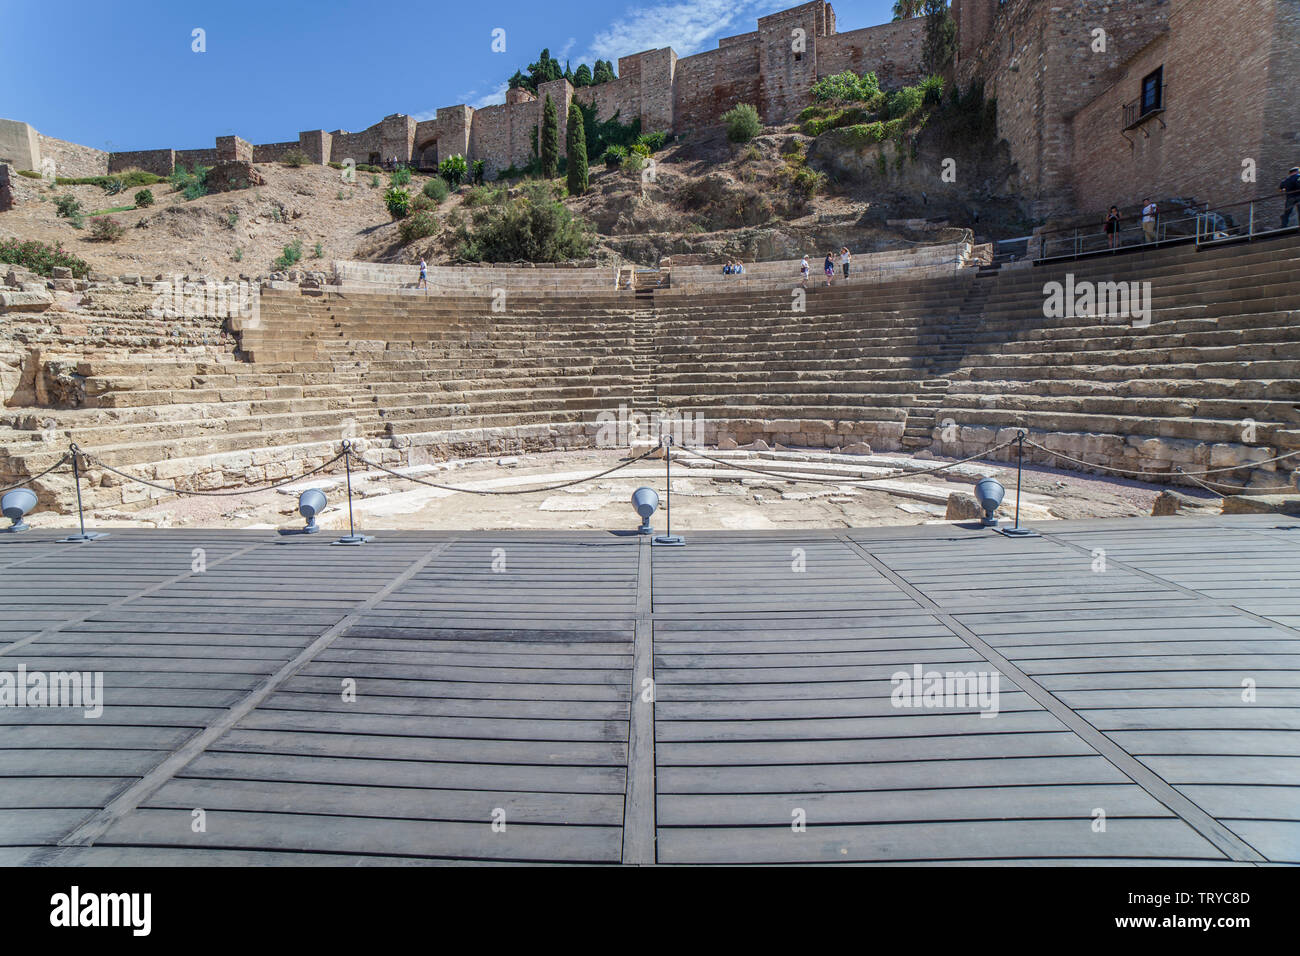 Malaga, Spanien - Sept 23 2019: Bühne oder pulpitum der Römischen Theater von Malaga, Andalusien, Spanien Stockfoto